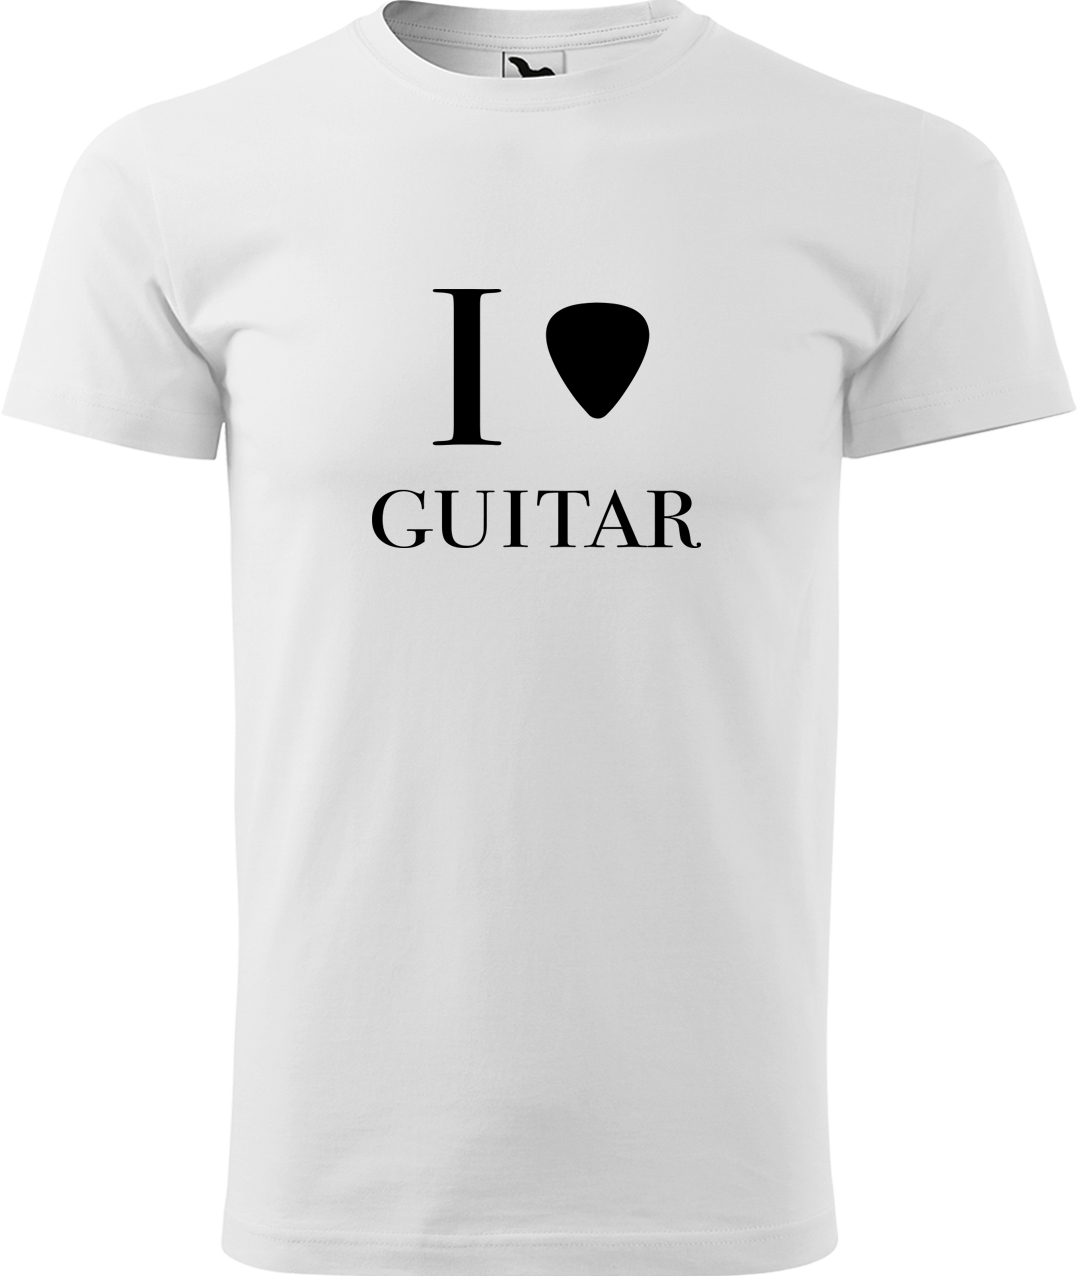 Pánské tričko s kytarou - I love guitar Velikost: XL, Barva: Bílá (00), Střih: pánský